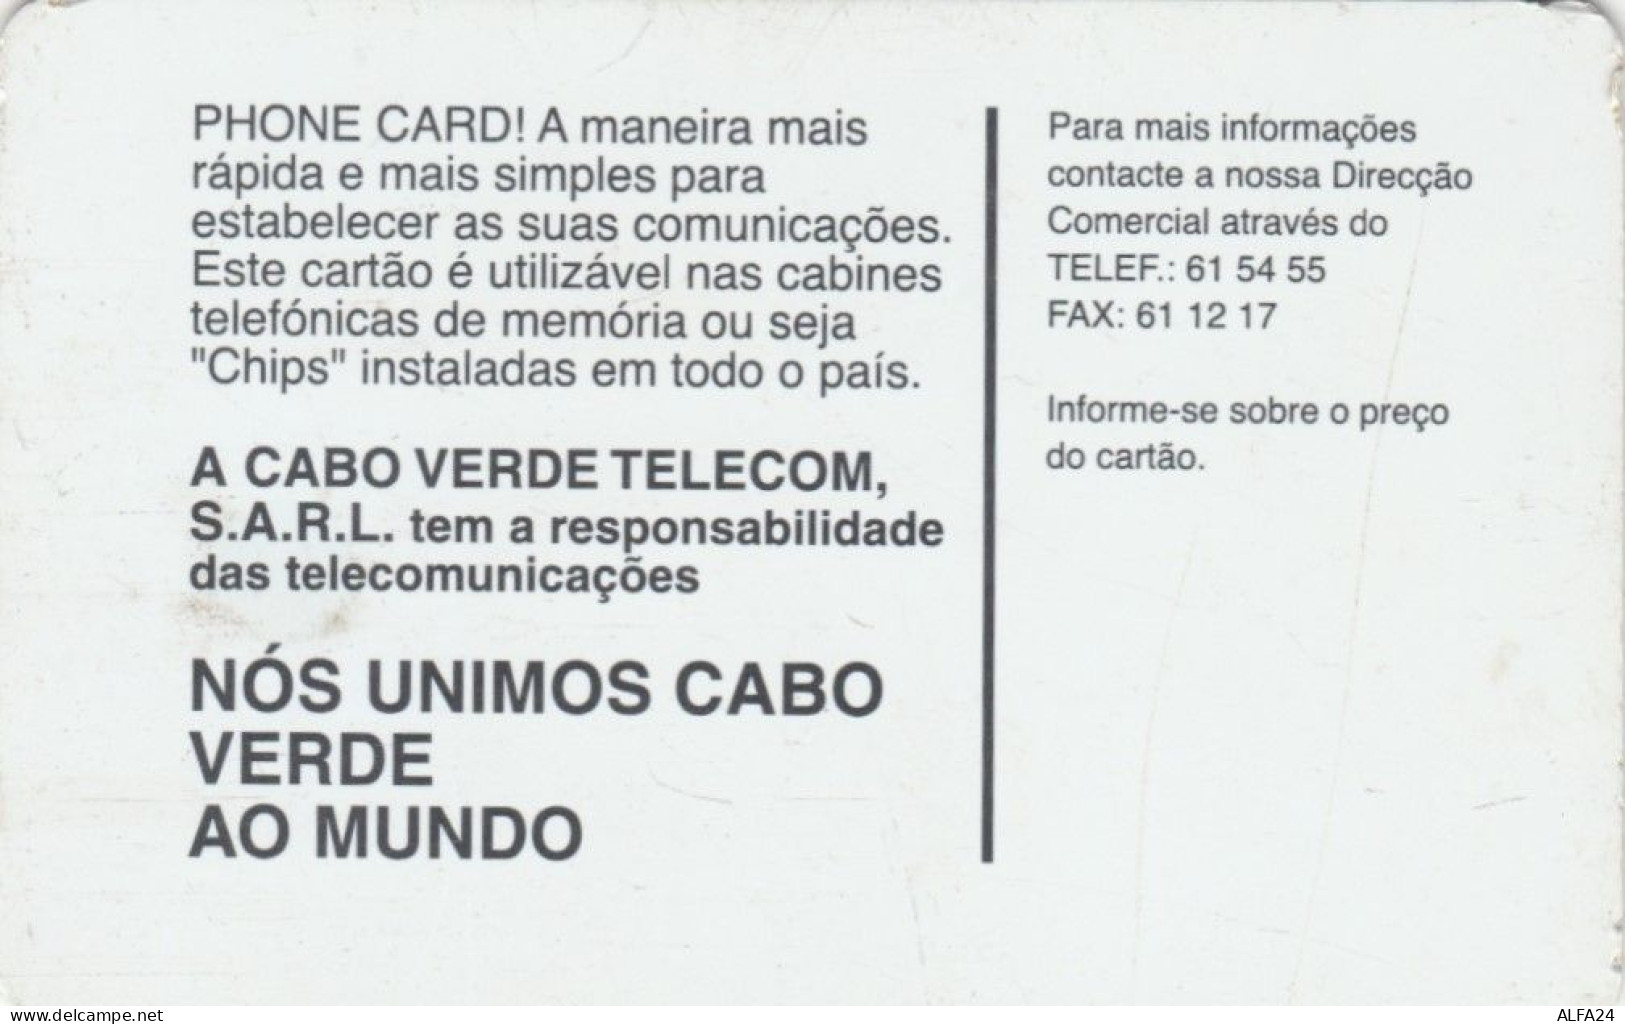 PHONE CARD CABO VERDE  (E102.45.6 - Kaapverdische Eilanden